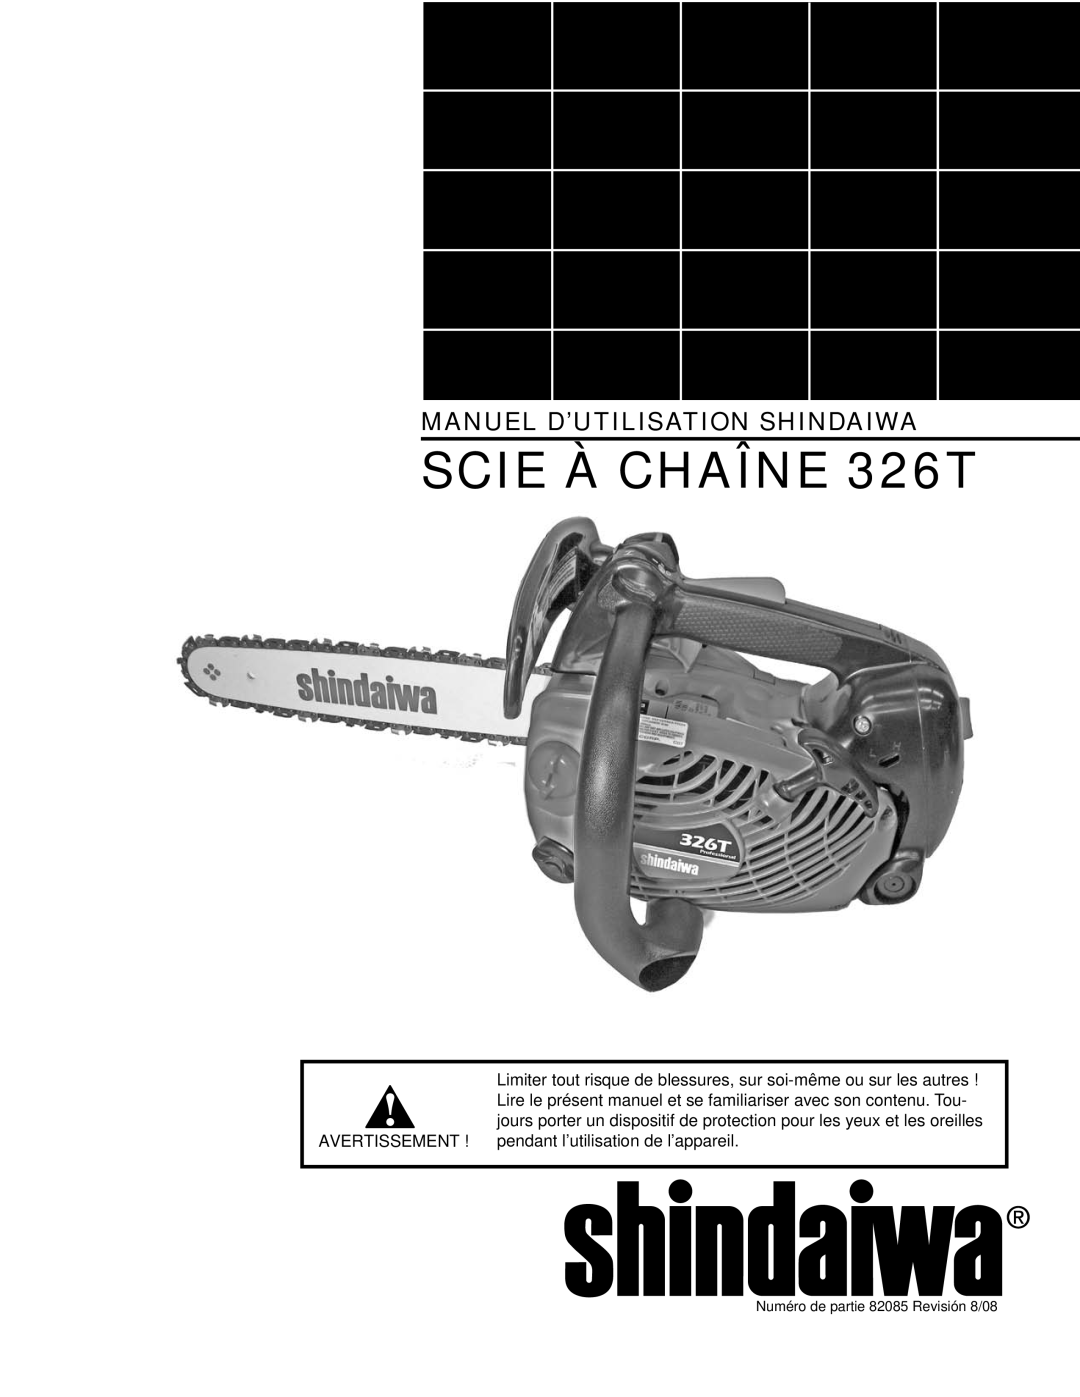 Shindaiwa manual SCIE À CHAÎNE 326T, Manuel D’Utilisation Shindaiwa, Numéro de partie 82085 Revisión 8/08 